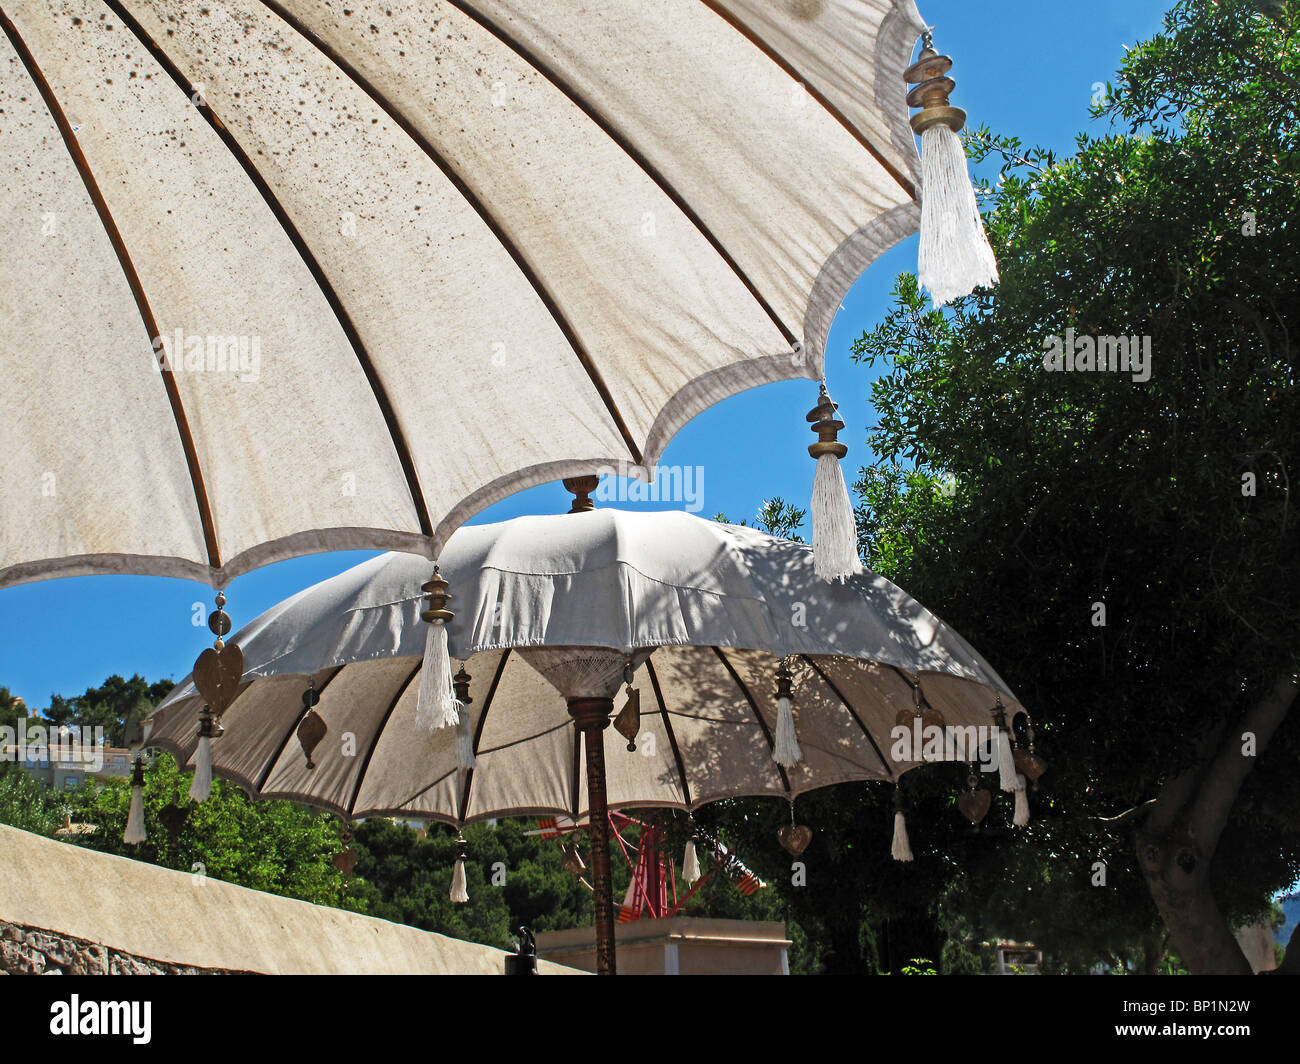 Orientalischen Stil Sonnenschirme vor einem sonnigen blauen Himmel  Stockfotografie - Alamy